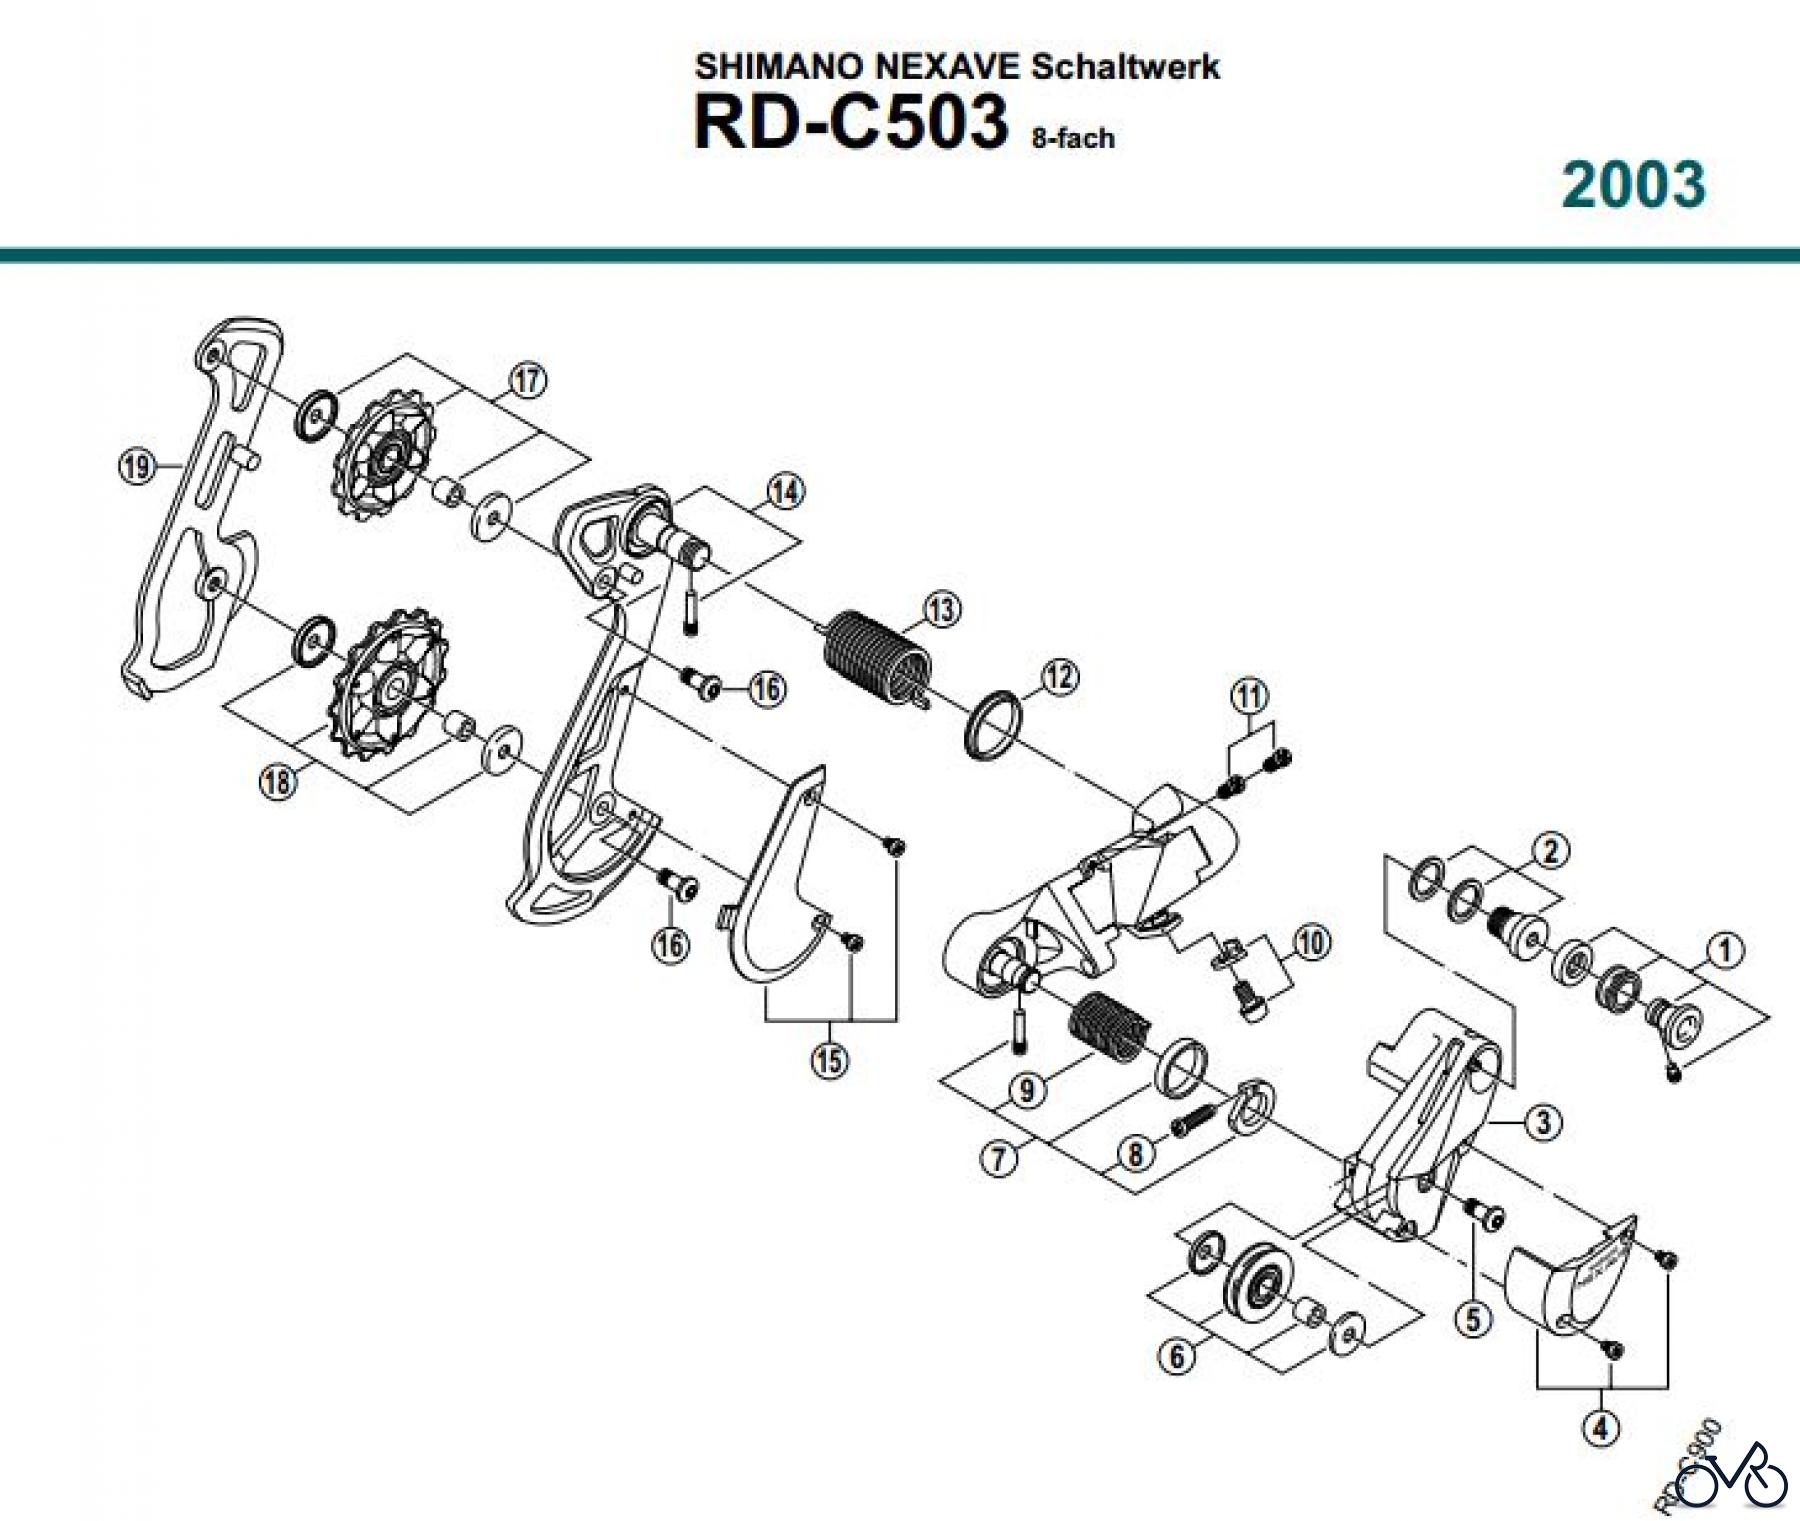  Shimano RD Rear Derailleur - Schaltwerk RD-C503-03